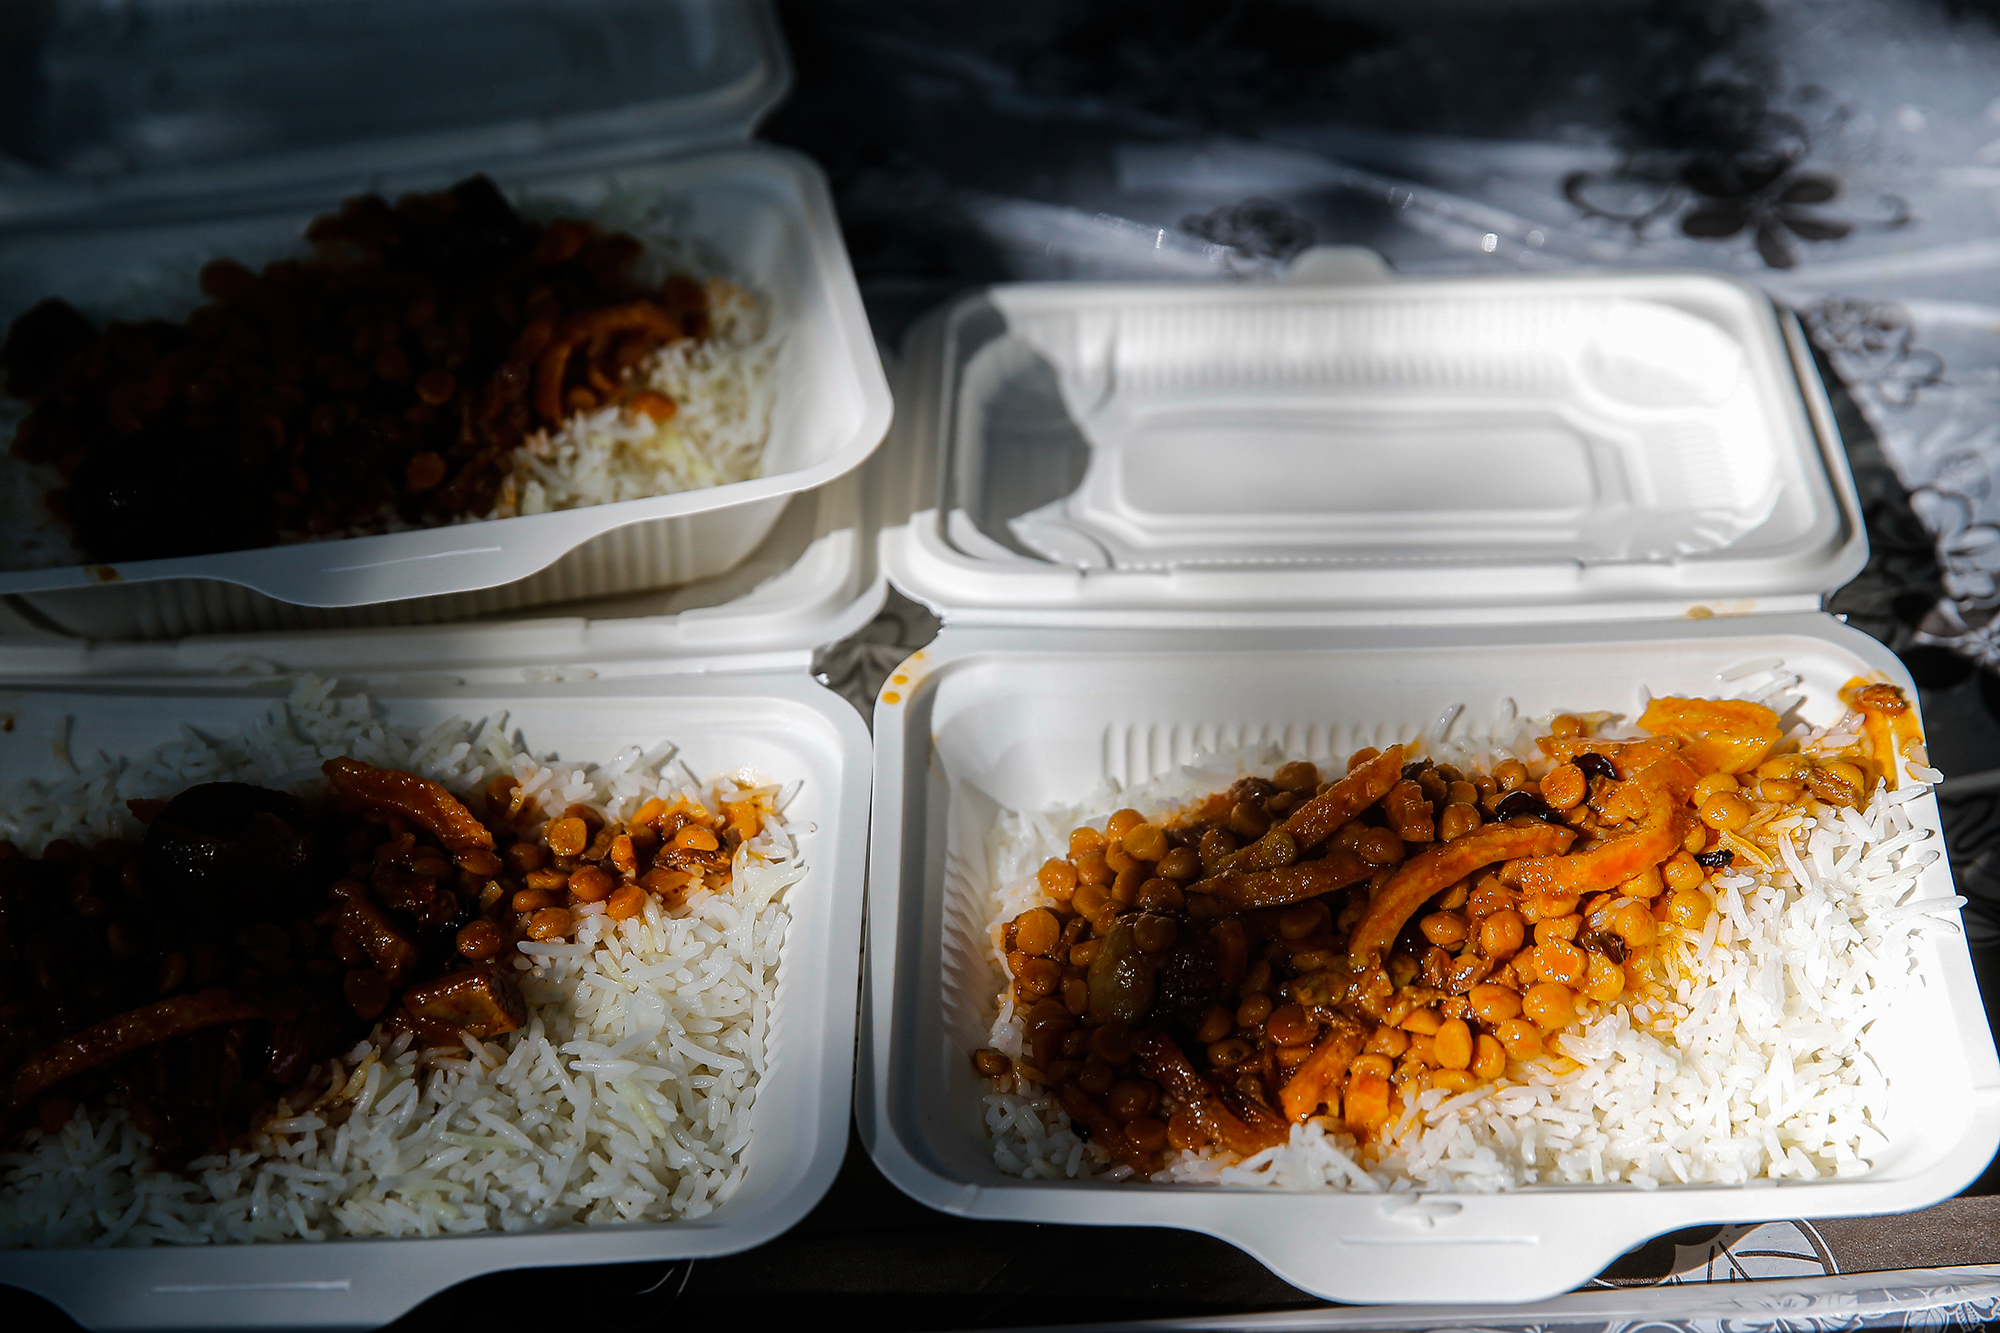 طبخ و توزیع 110 هزار پرس غذای گرم برای نیازمندان در روز عید غدیر